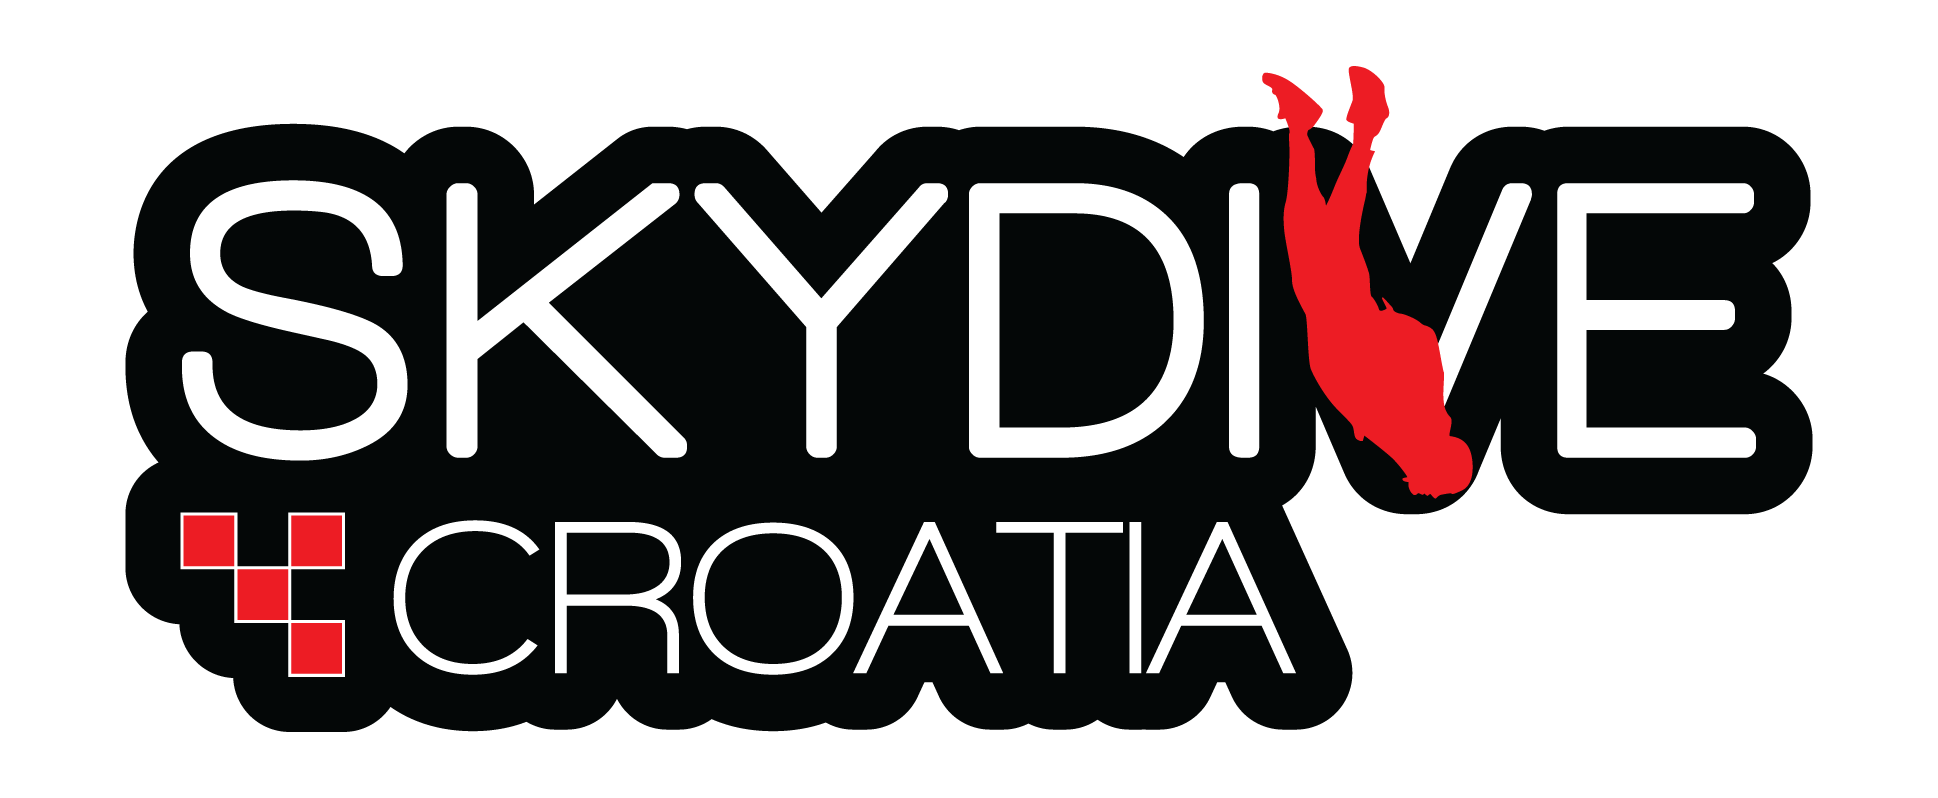 Skydive Croatia - Studentski.hr